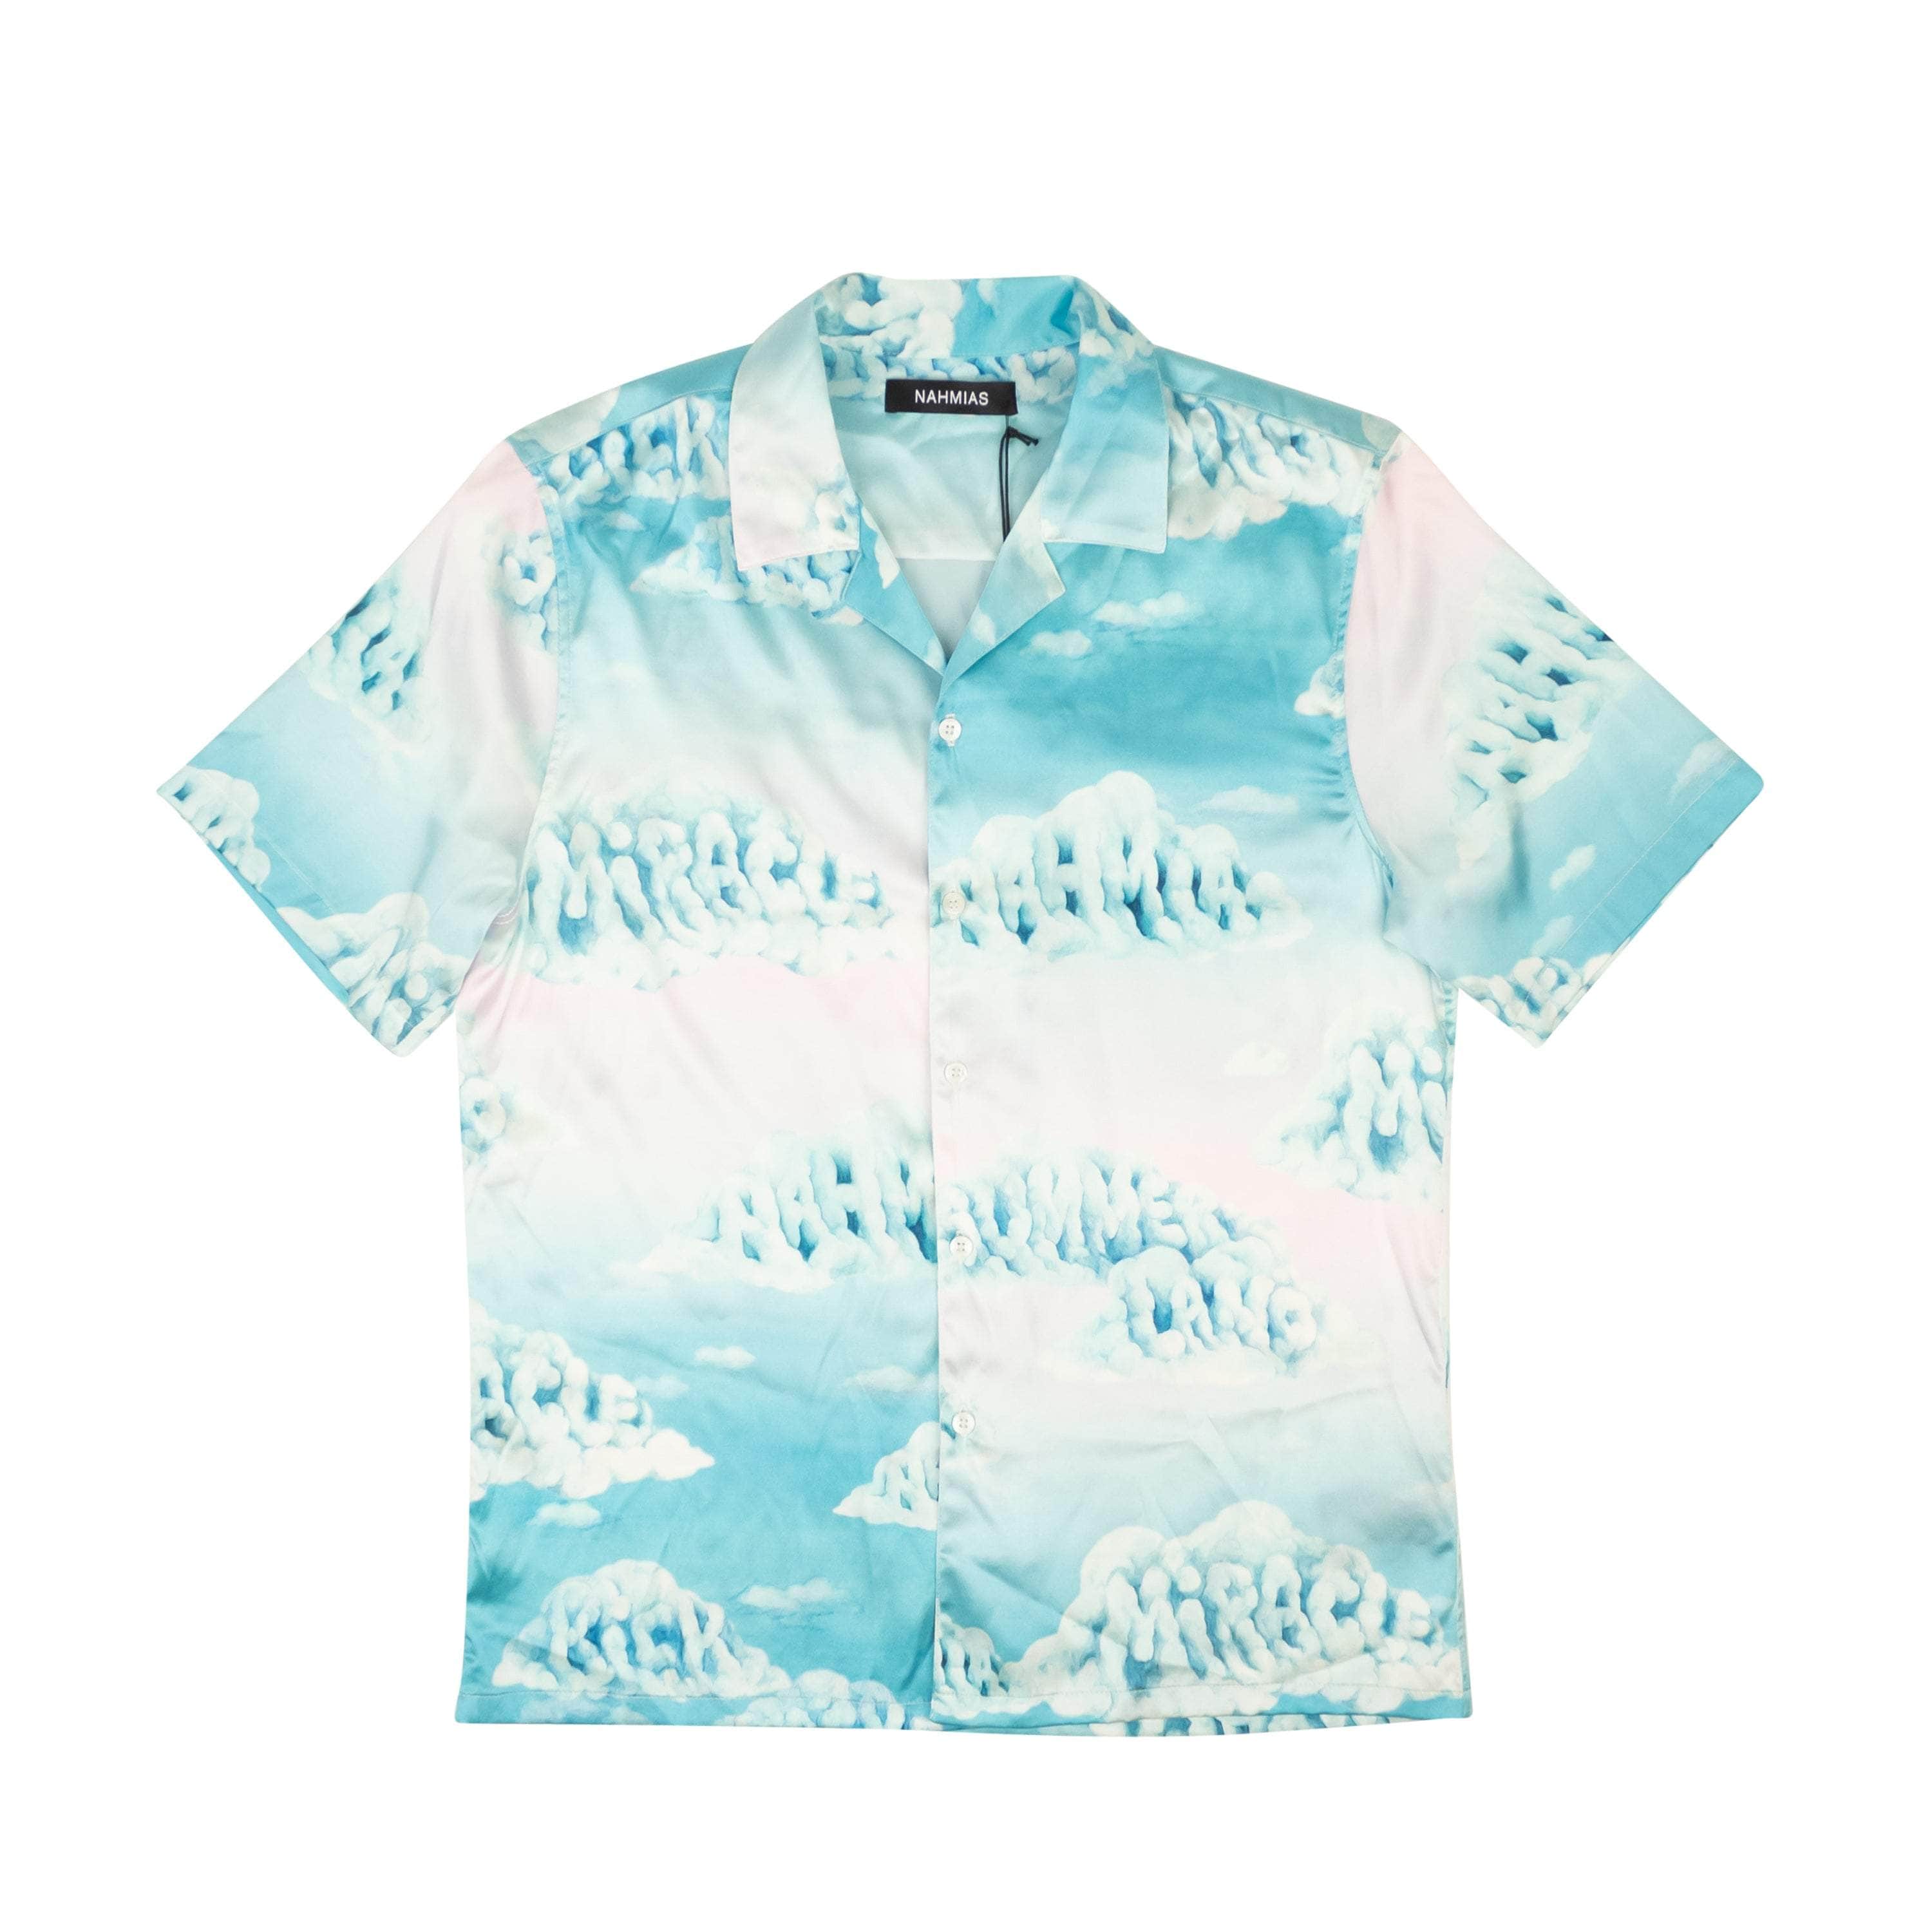 Nahmias 250-500, channelenable-all, chicmi, couponcollection, gender-mens, main-clothing, mens-shoes, nahmias, size-m, size-s, size-xl Light Blue Cloud Silk Button Down Shirt